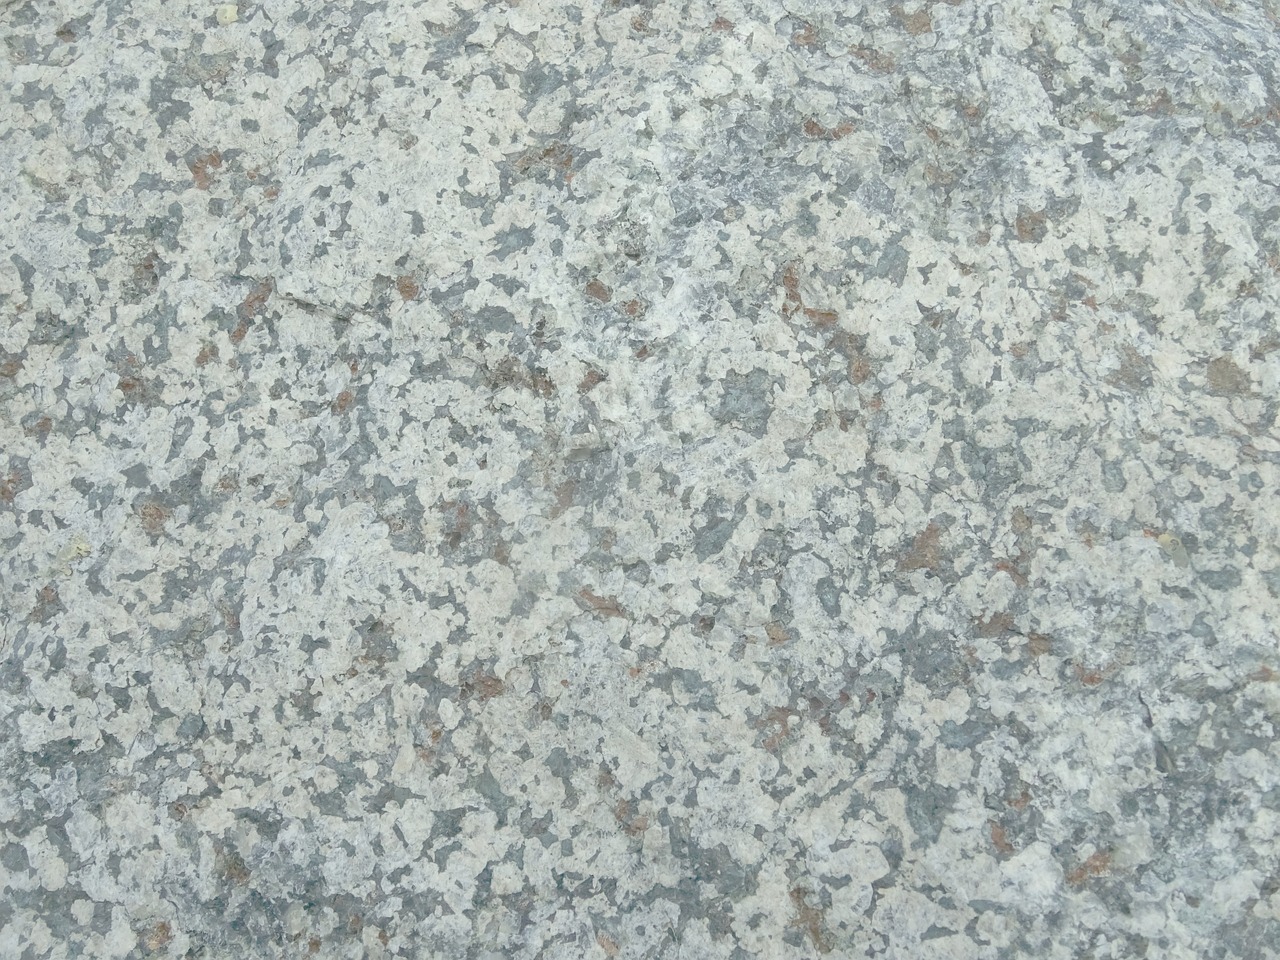 granite surface rock free photo